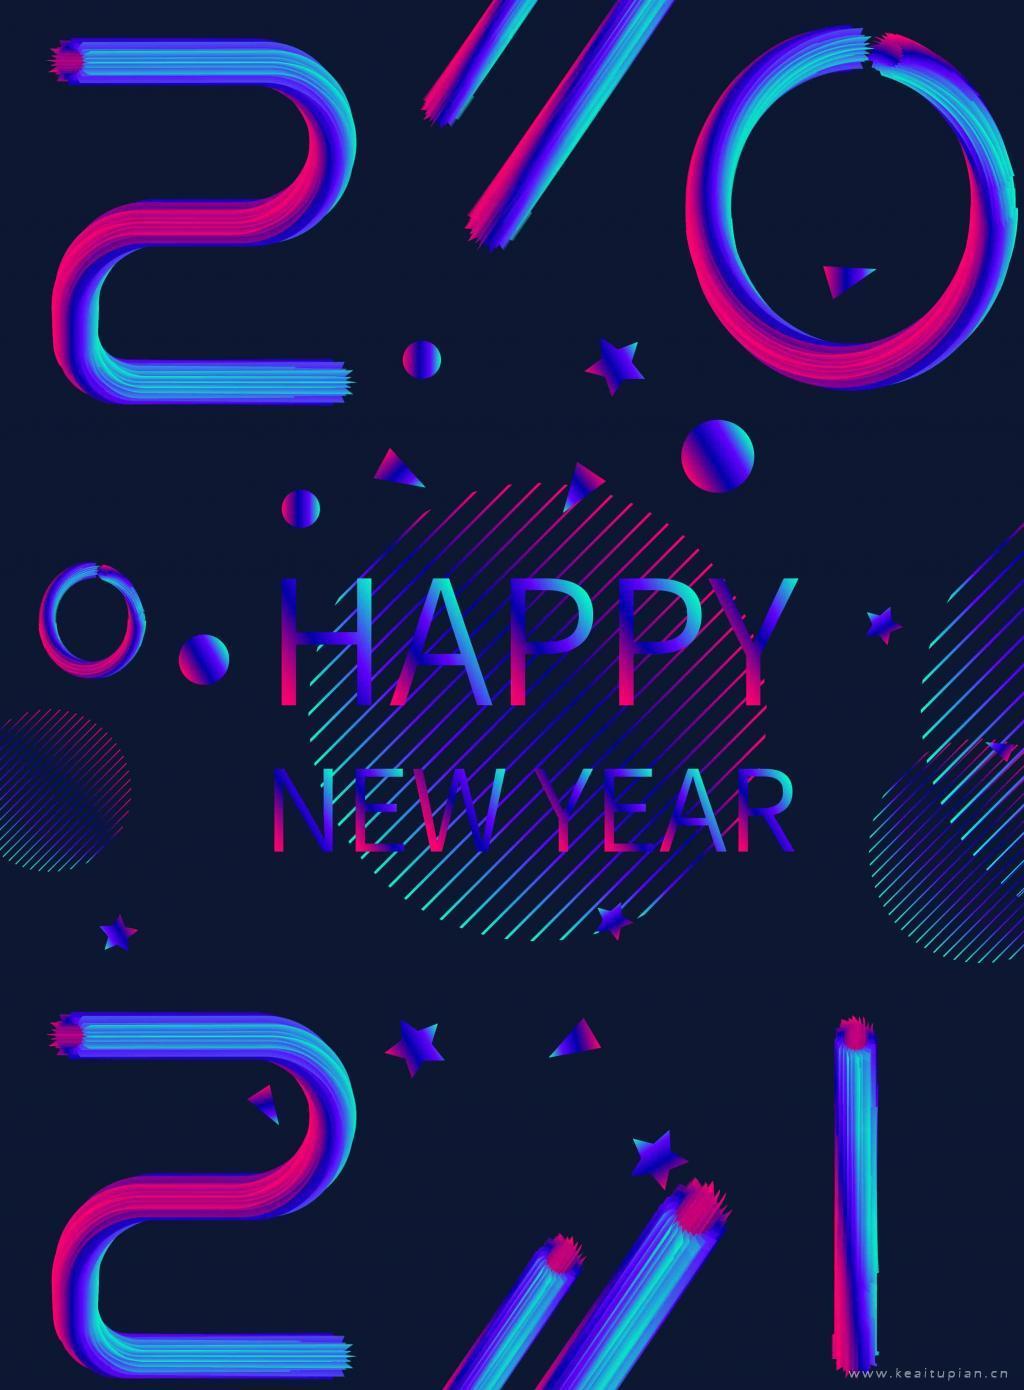 2021炫酷庆祝新年文字壁纸图高清手机壁纸